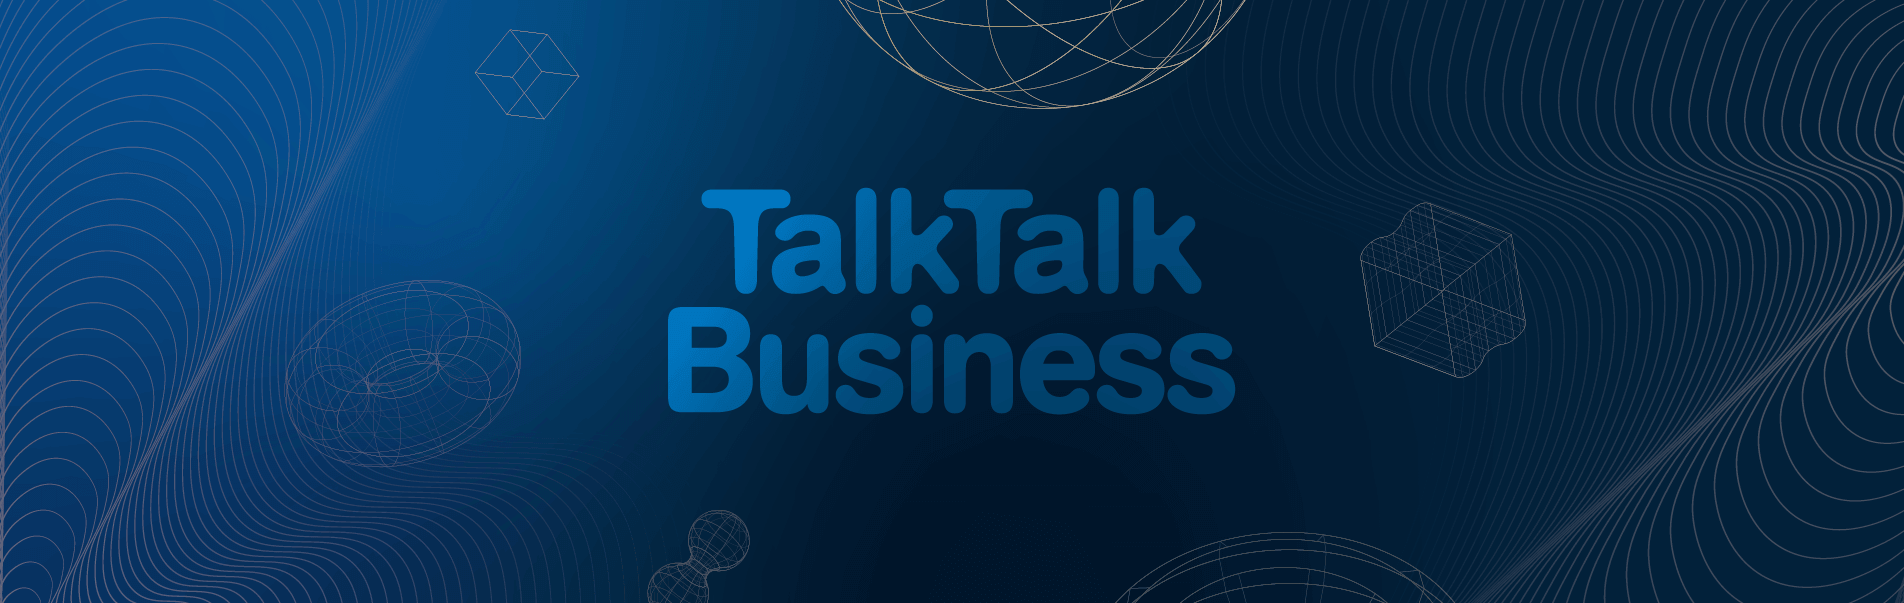 talktalk business